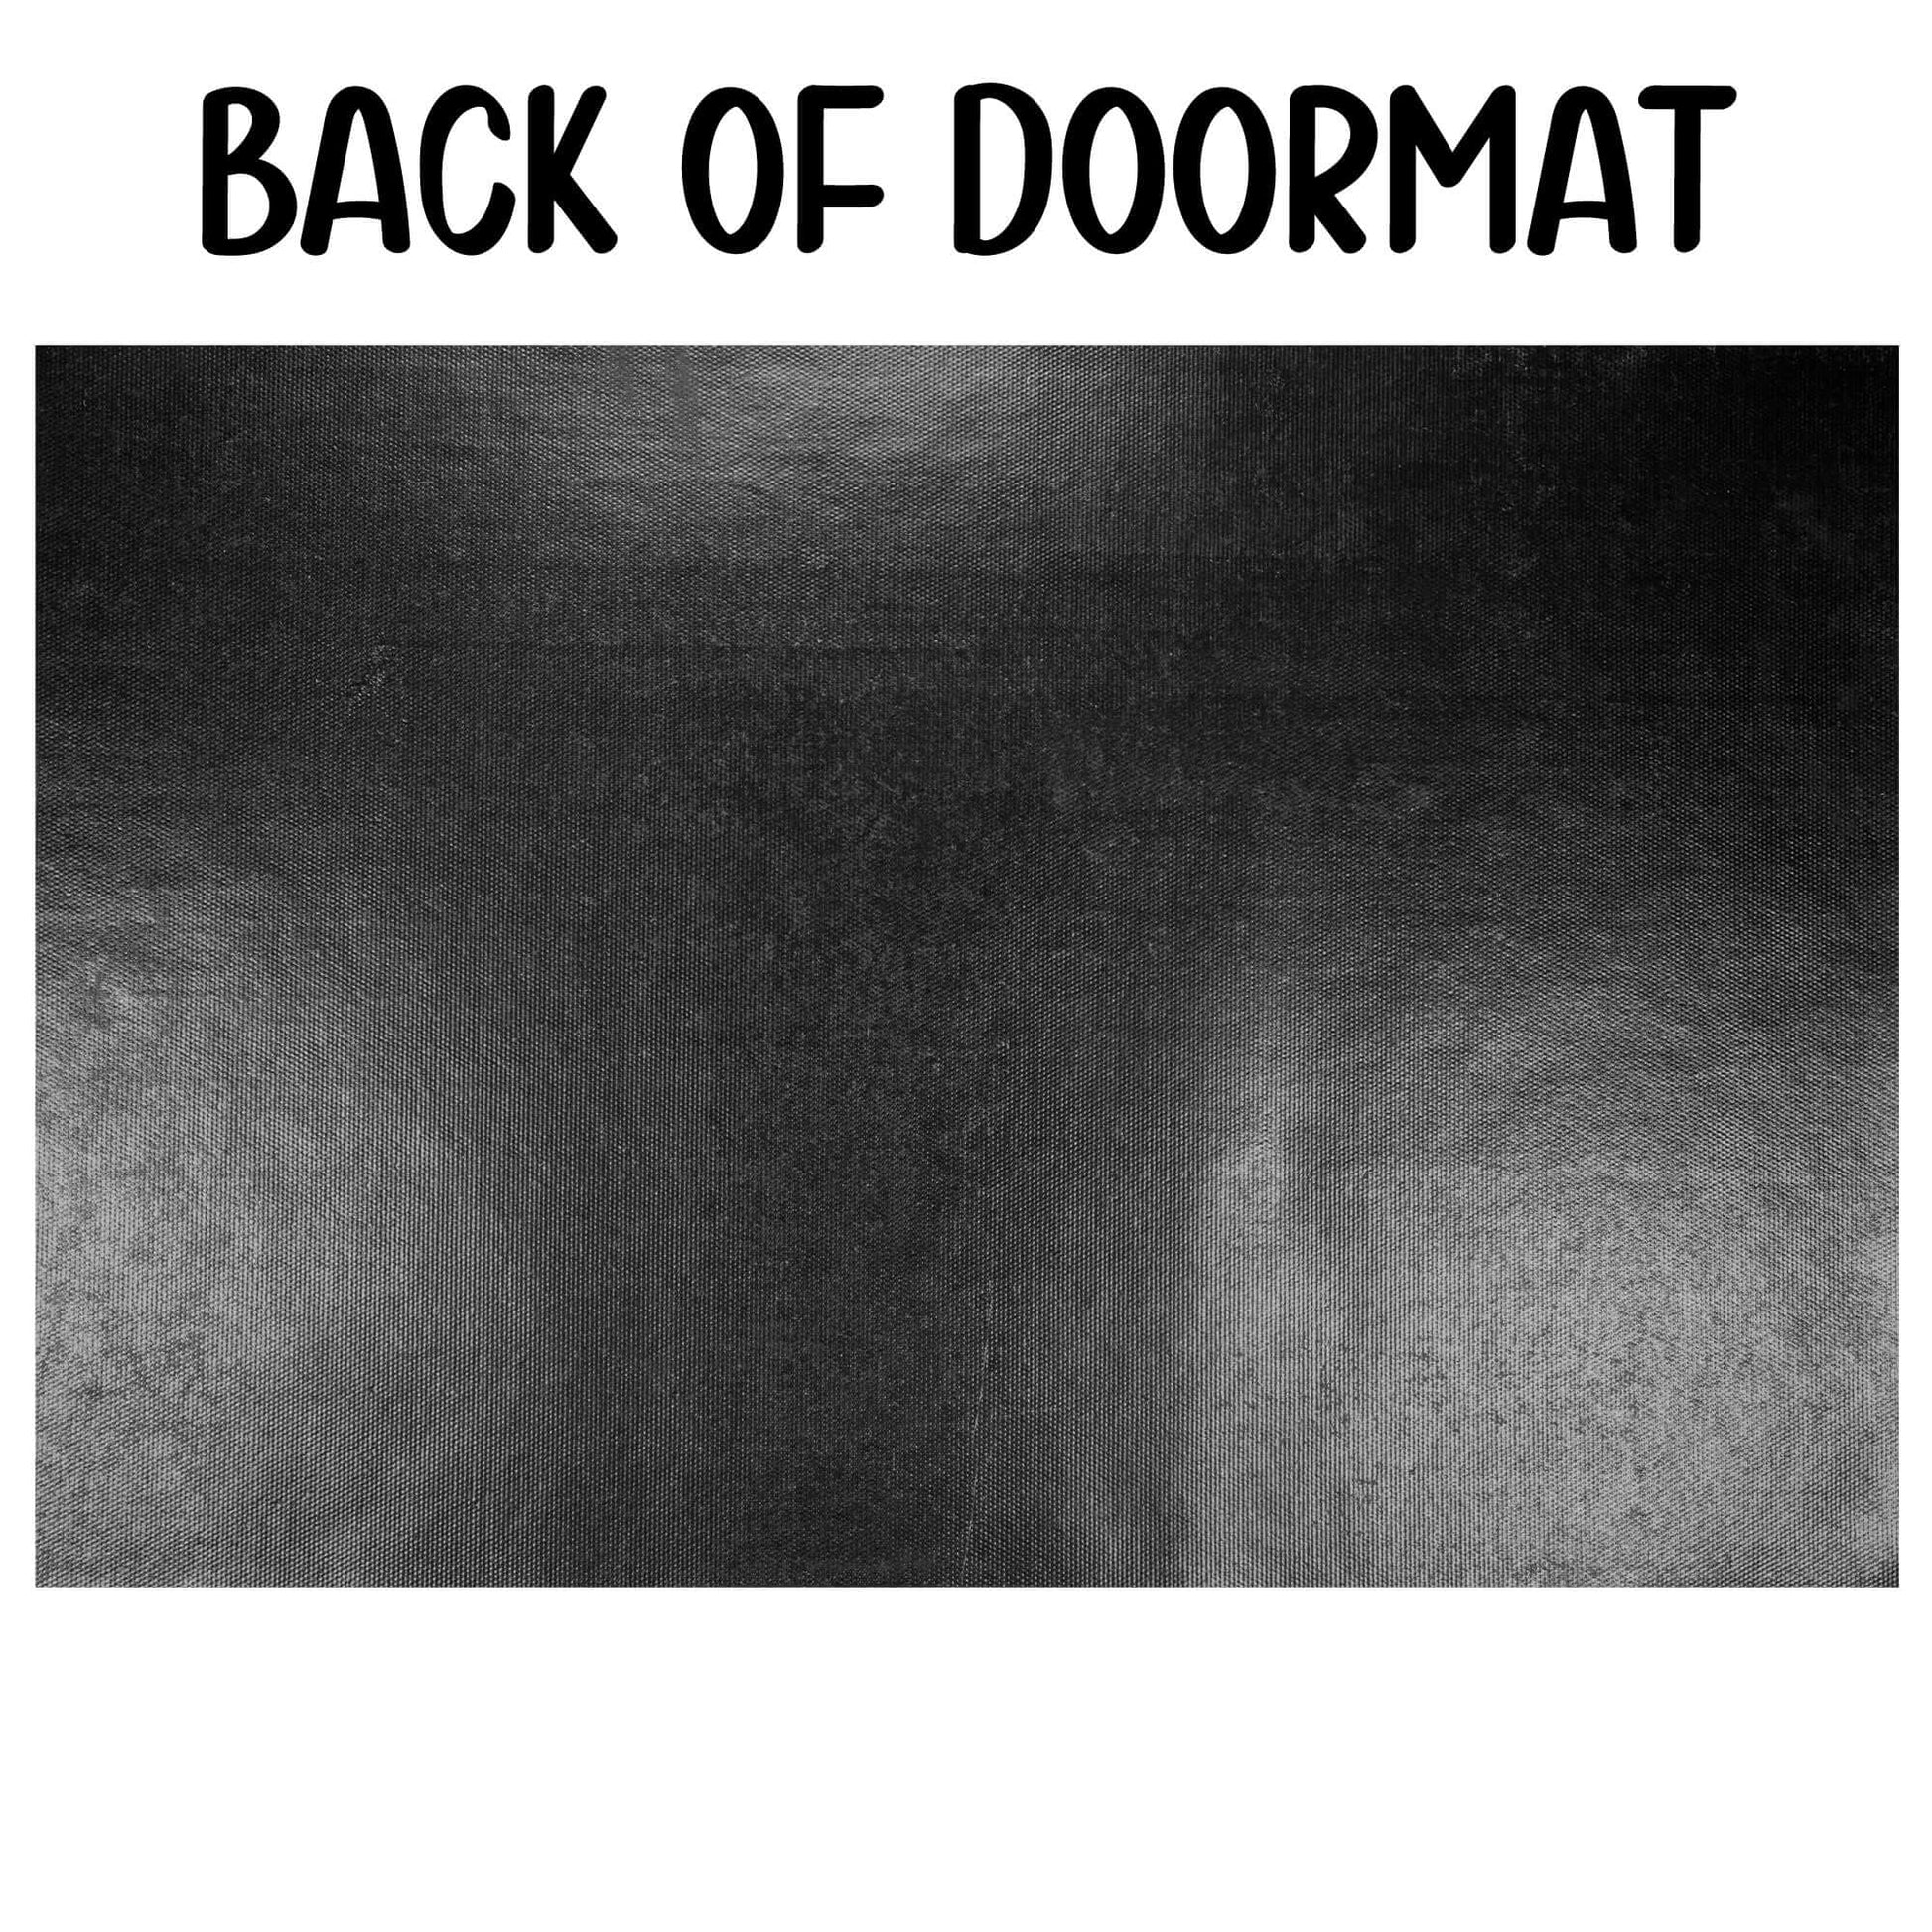 Backside of doormat.